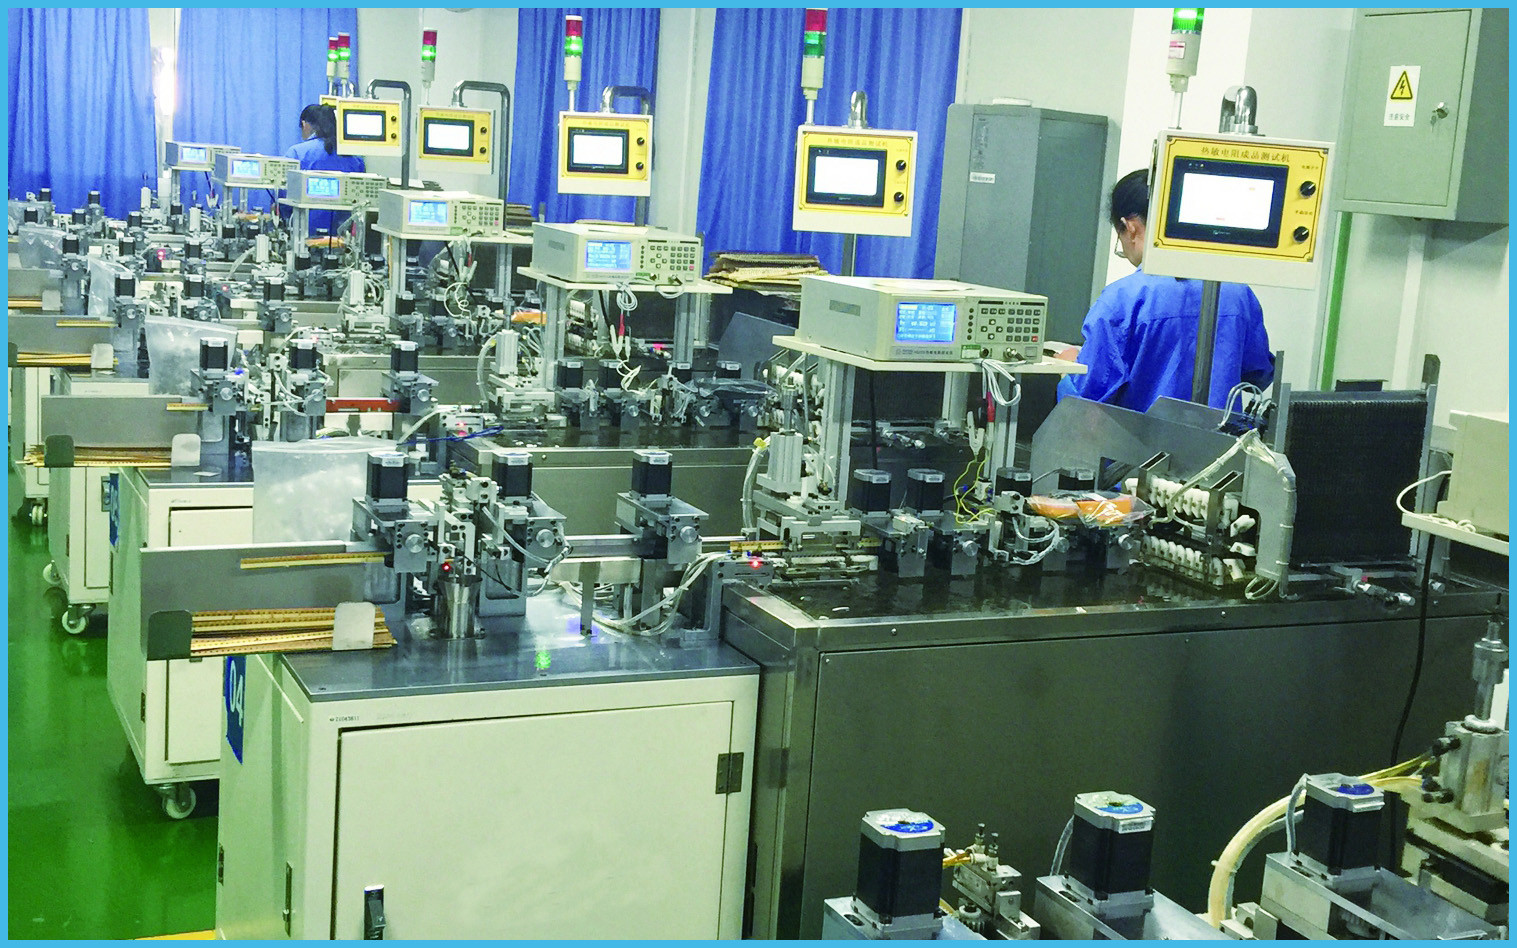 Dongguan Ampfort Electronics Co., Ltd. 공장 생산 라인